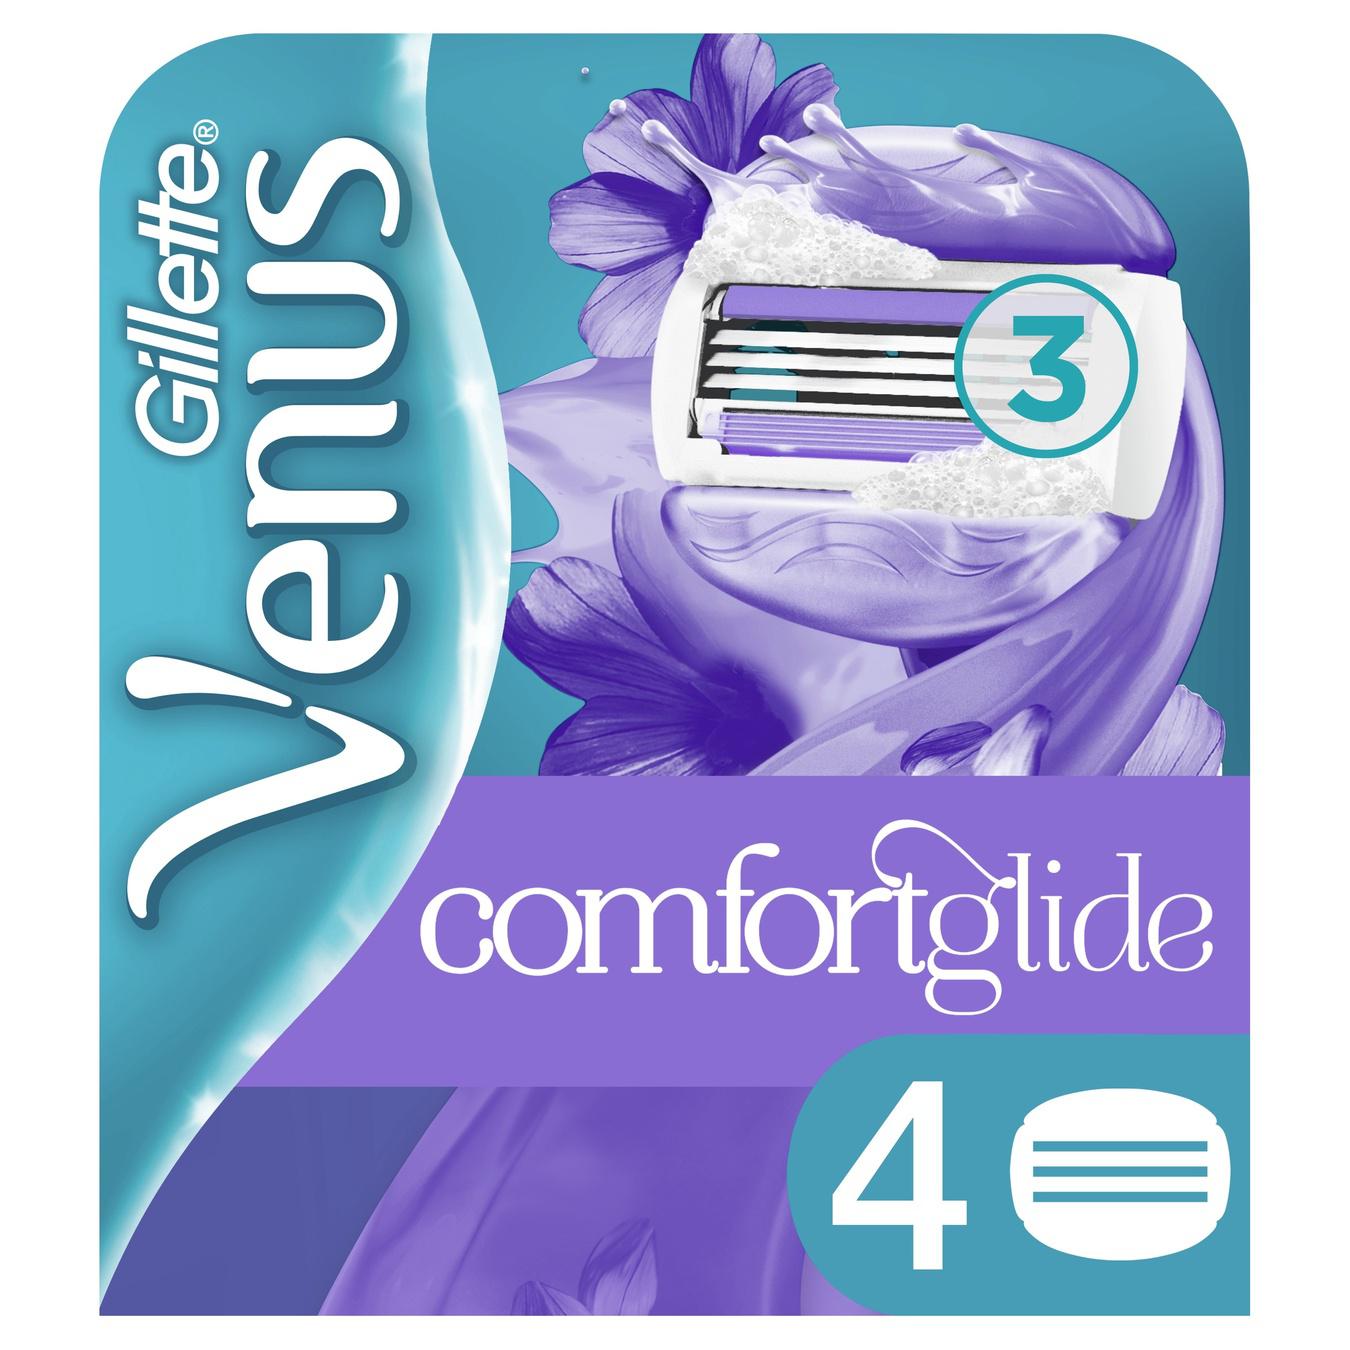 Кассеты Gillette Venus Comfort Glide Breeze сменные для бритья 4шт